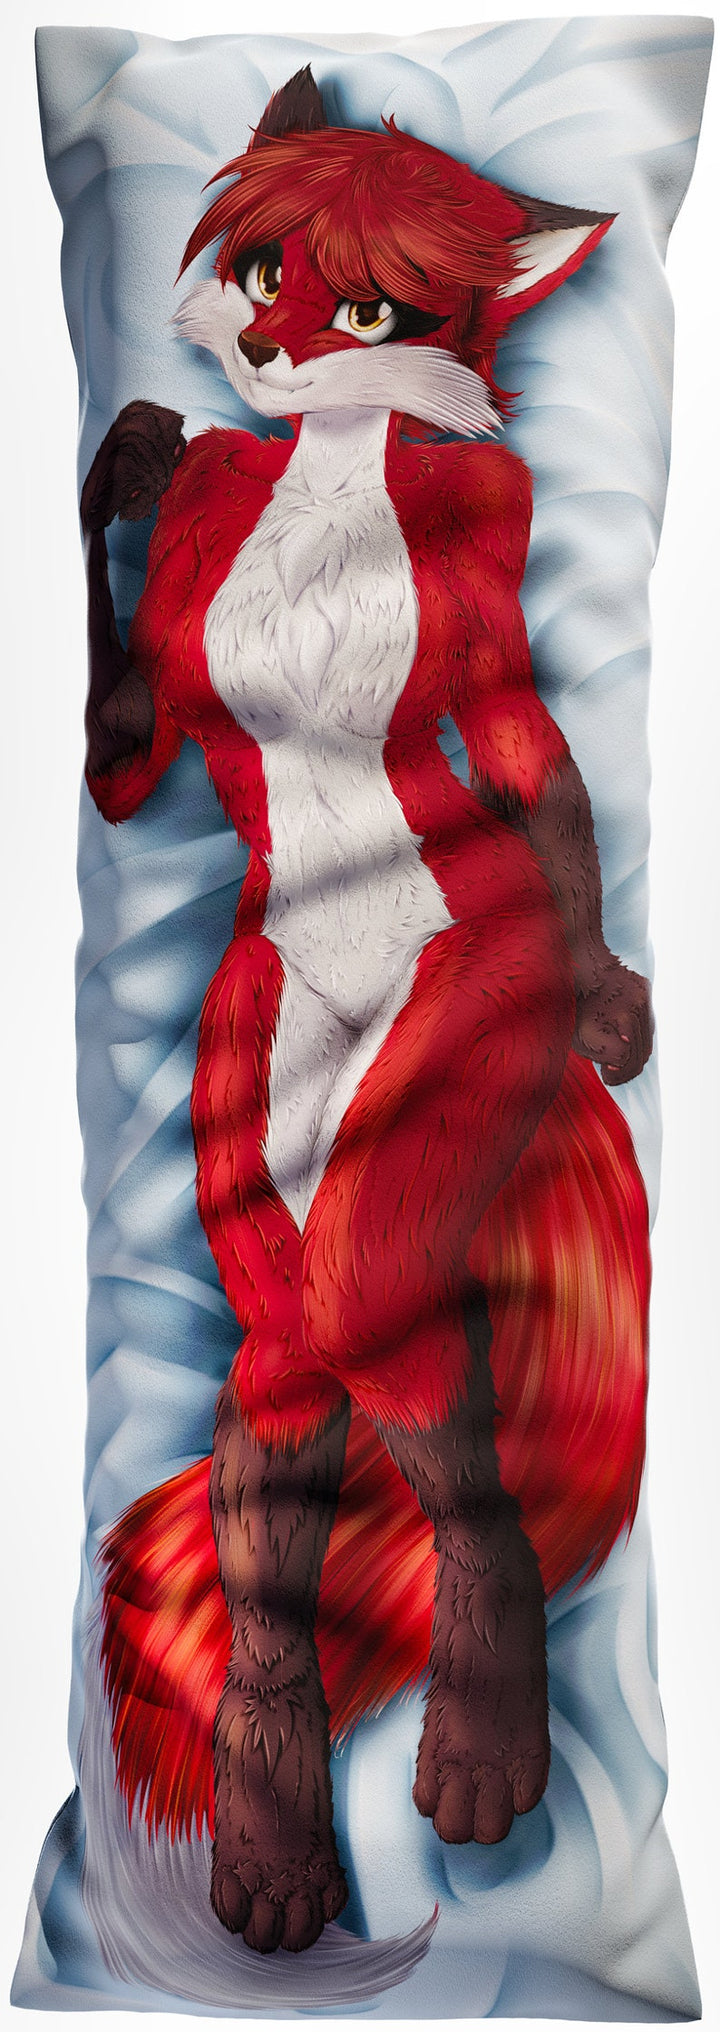 Daki Diane - Art by ruhisu - The Red Fox Dakimakura Furry Body Pillow Cover